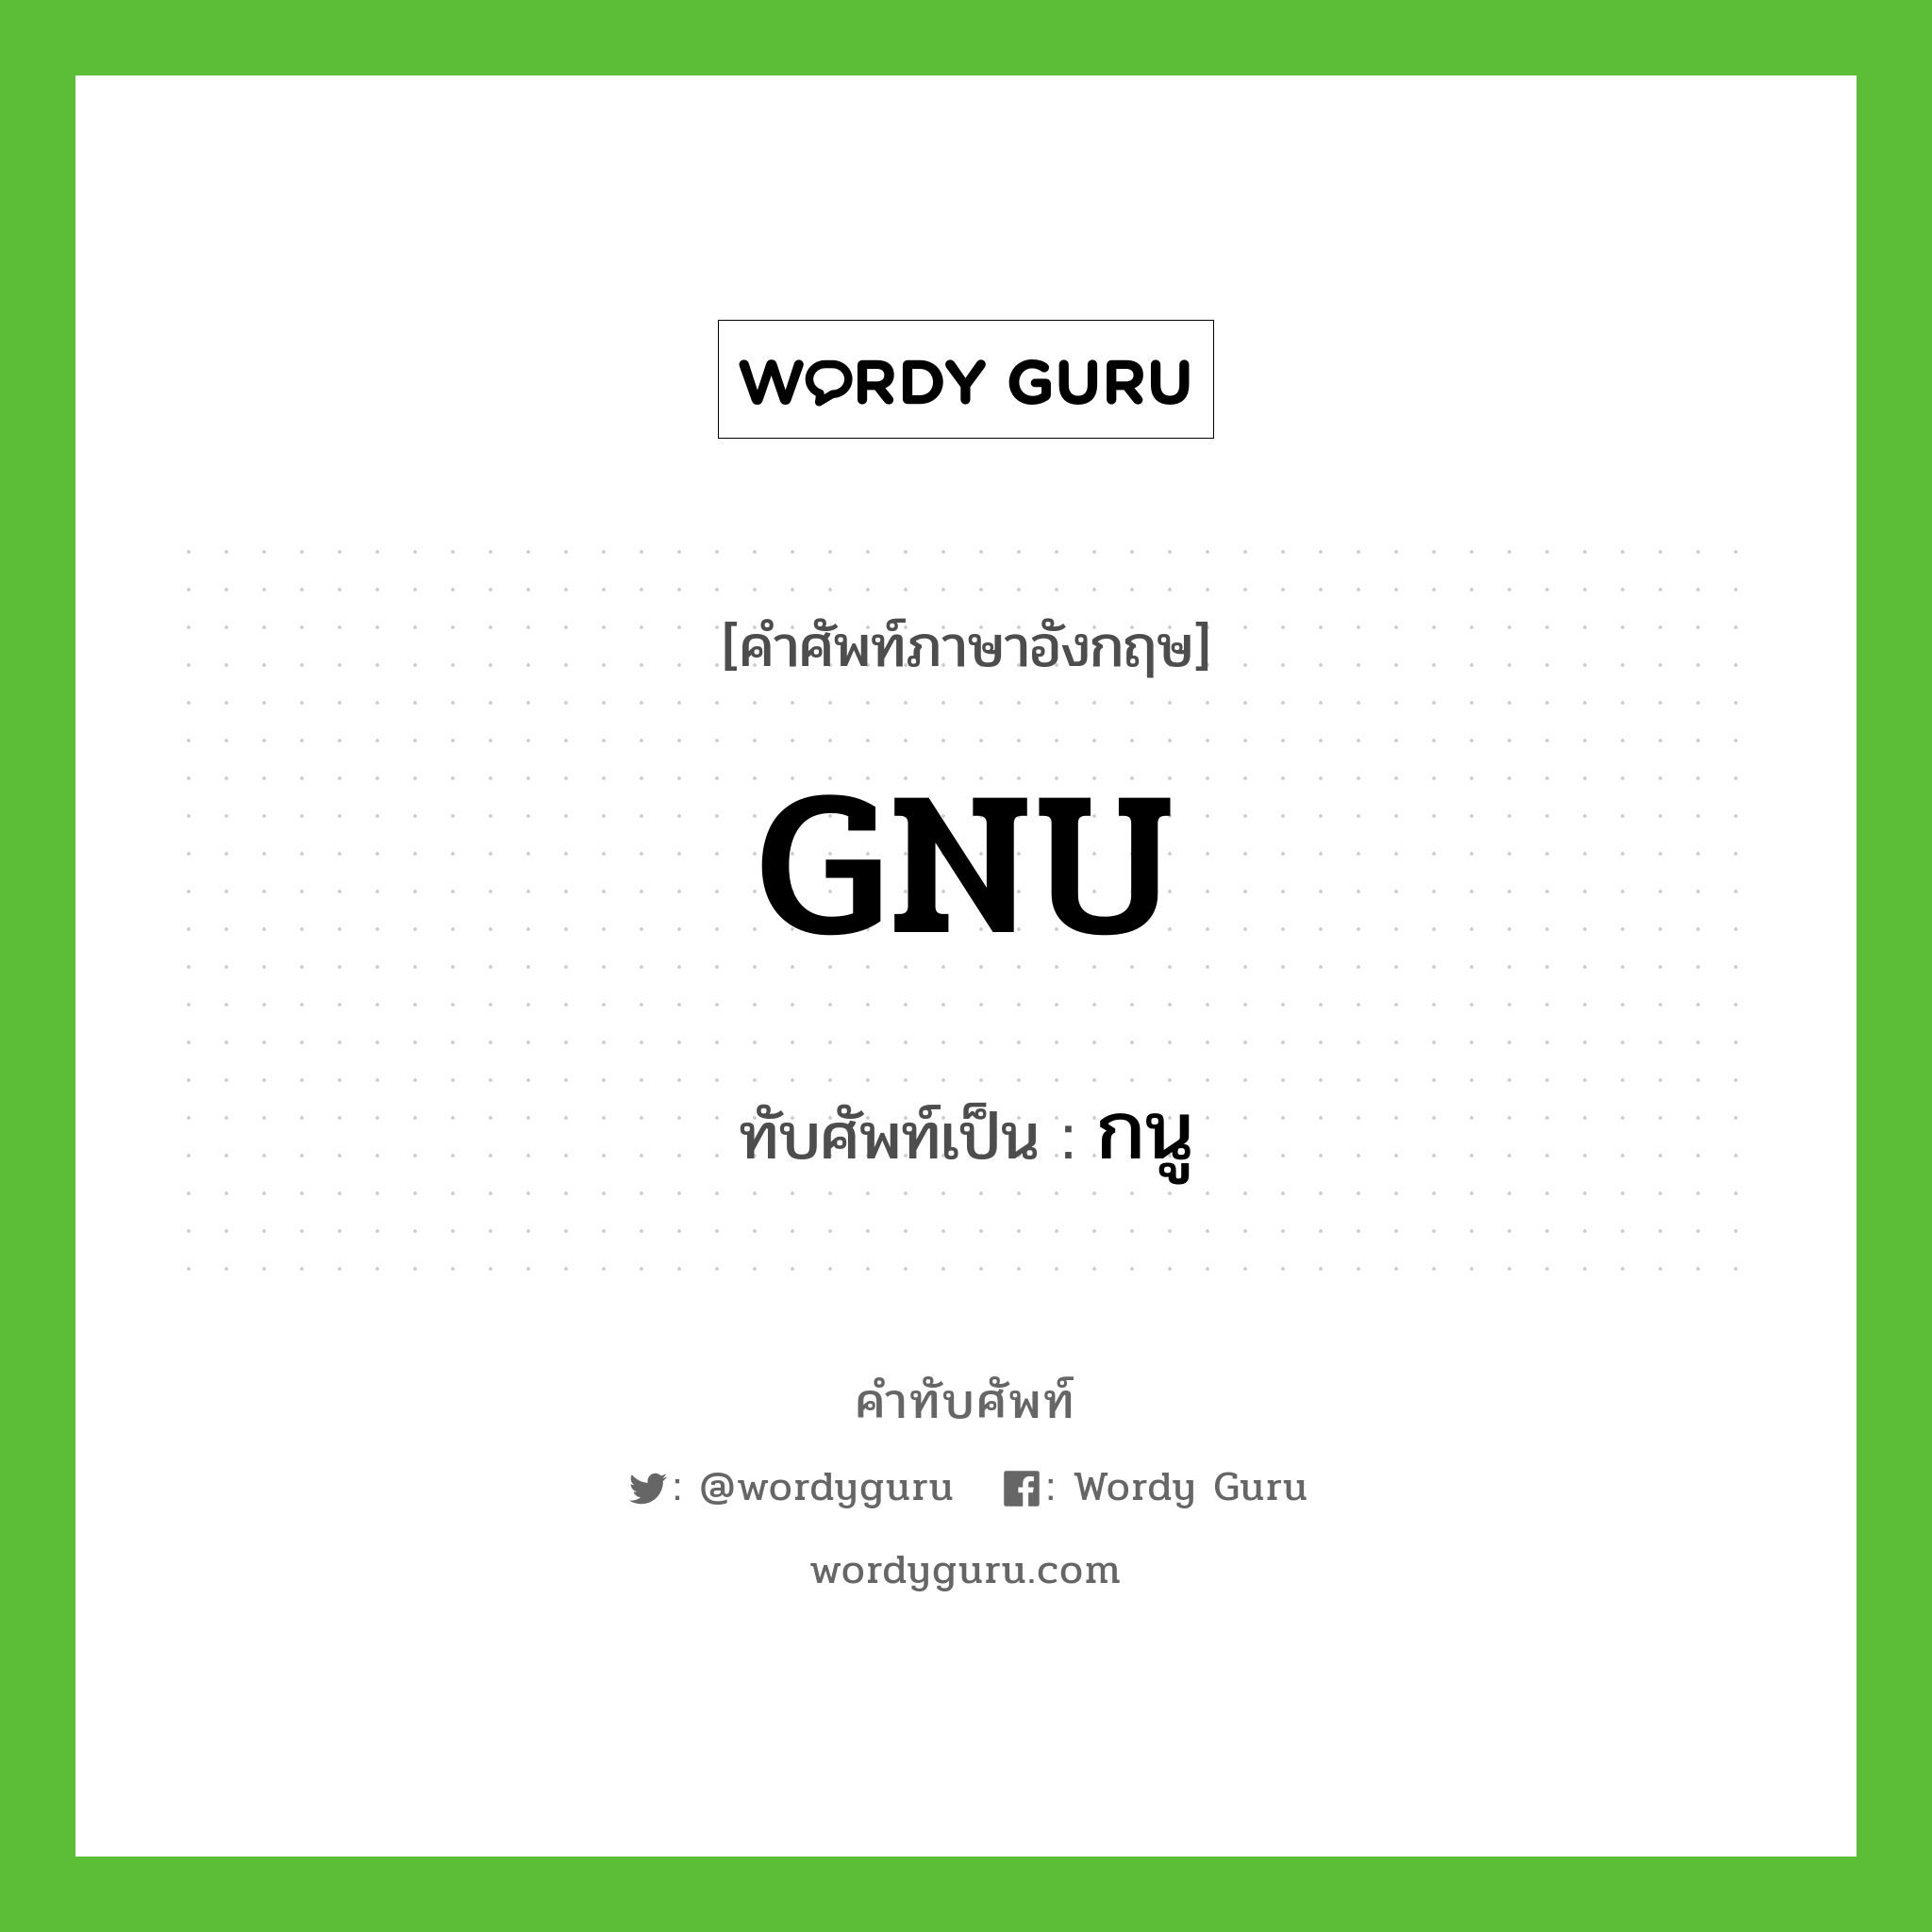 กนู เขียนอย่างไร?, คำศัพท์ภาษาอังกฤษ กนู ทับศัพท์เป็น GNU